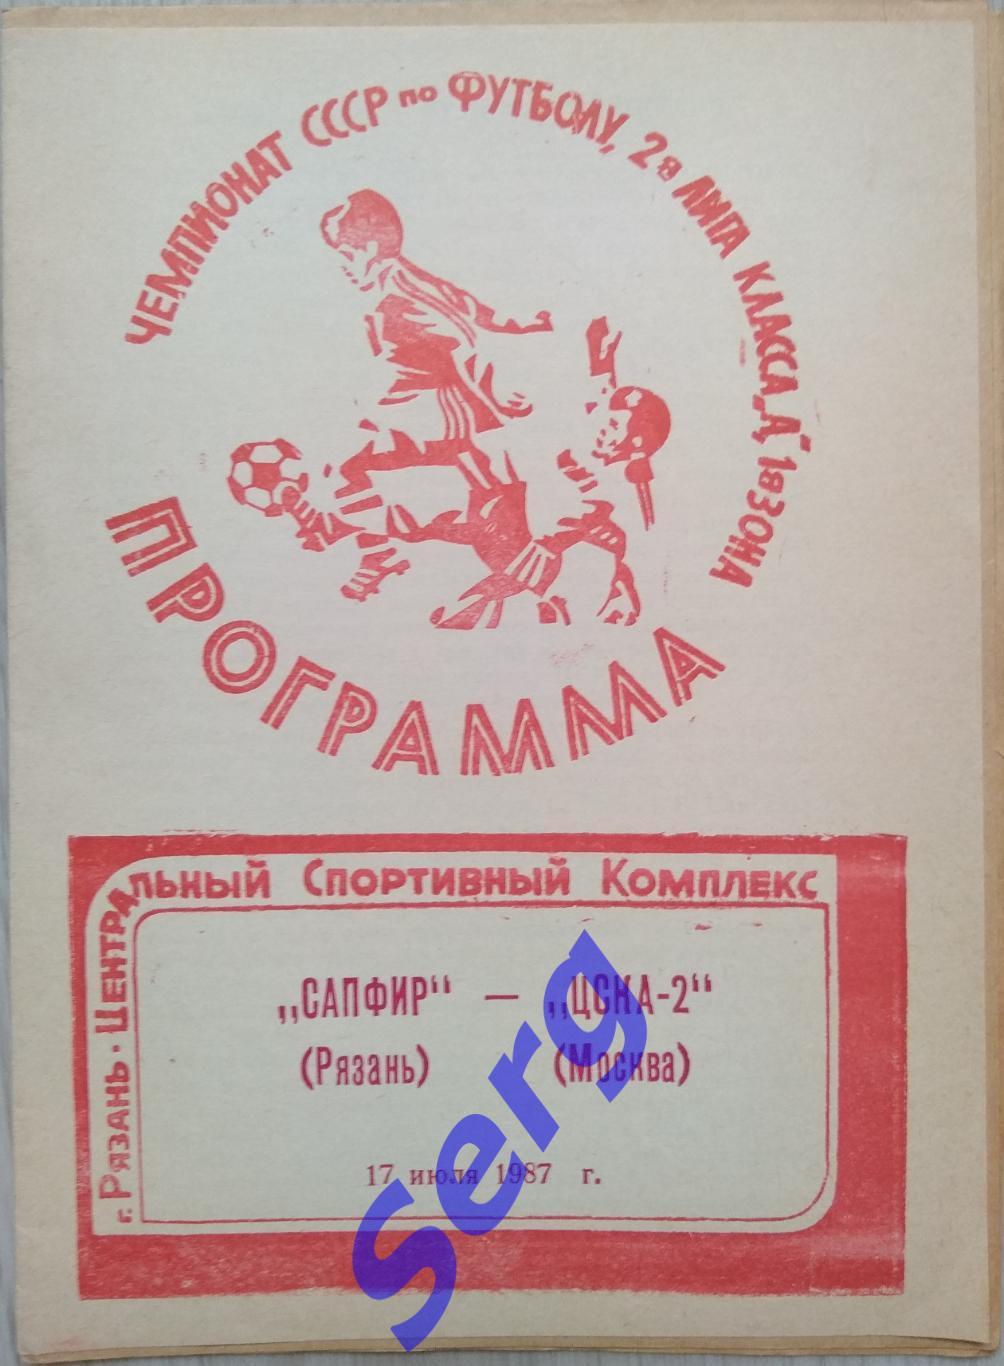 Сапфир Рязань - ЦСКА-2 Москва - 17 июля 1987 год